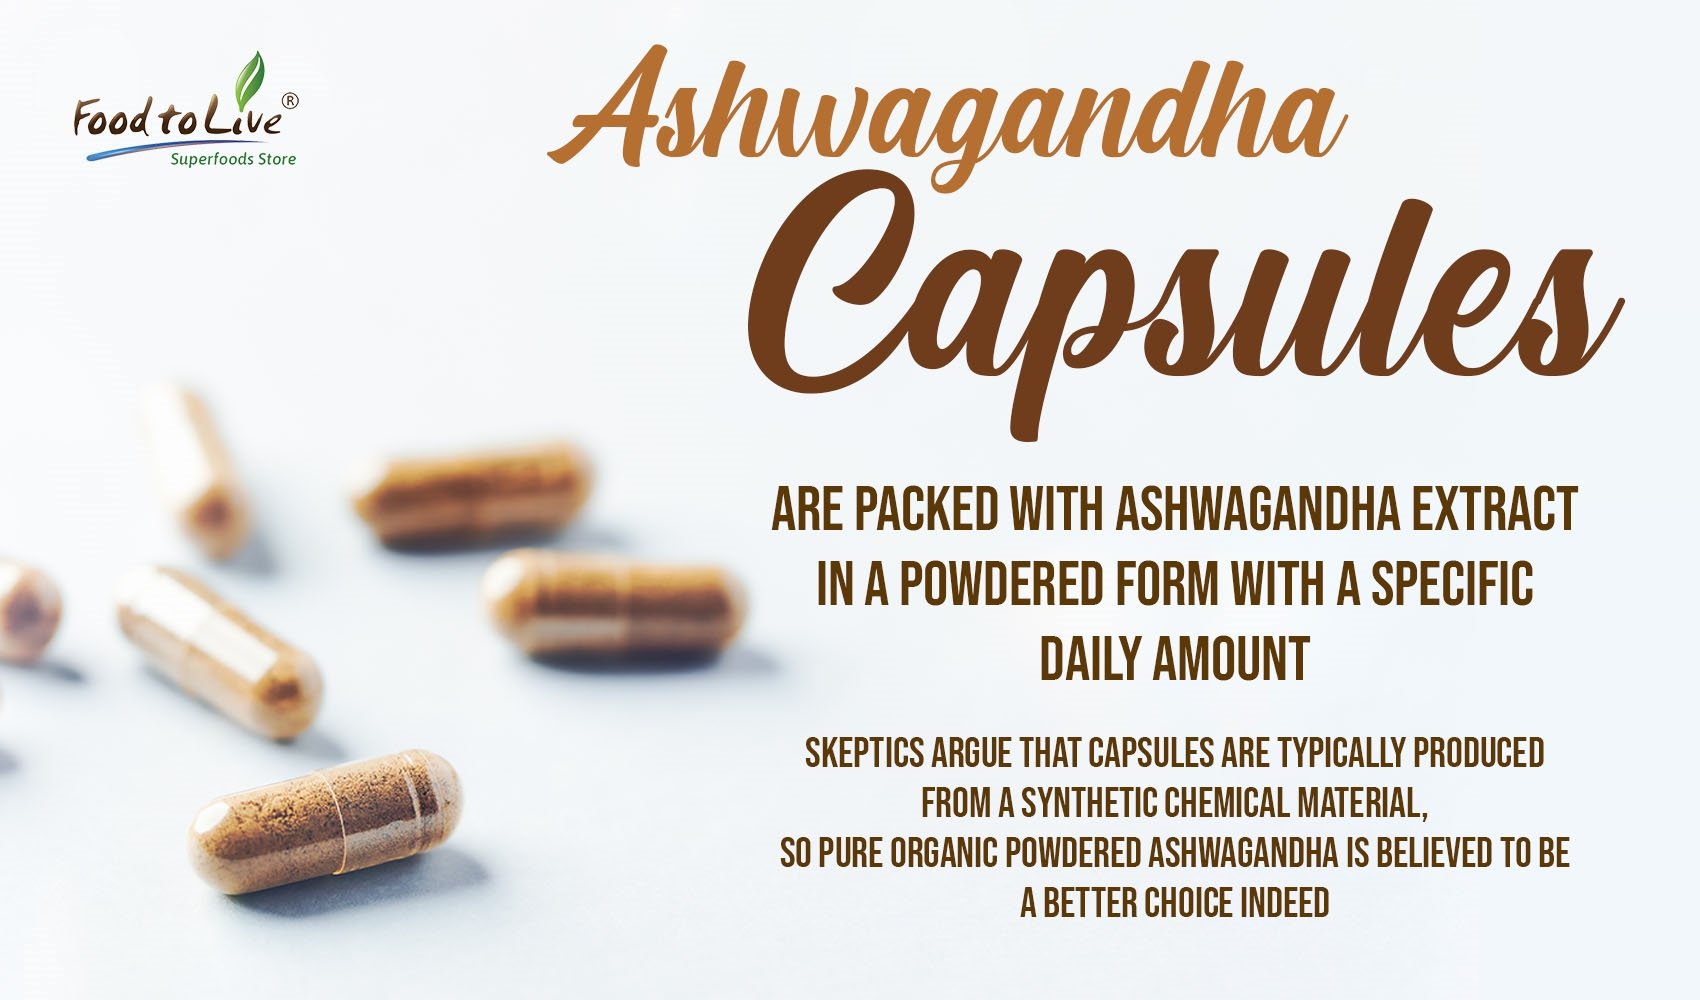 Ashwagandha capsules